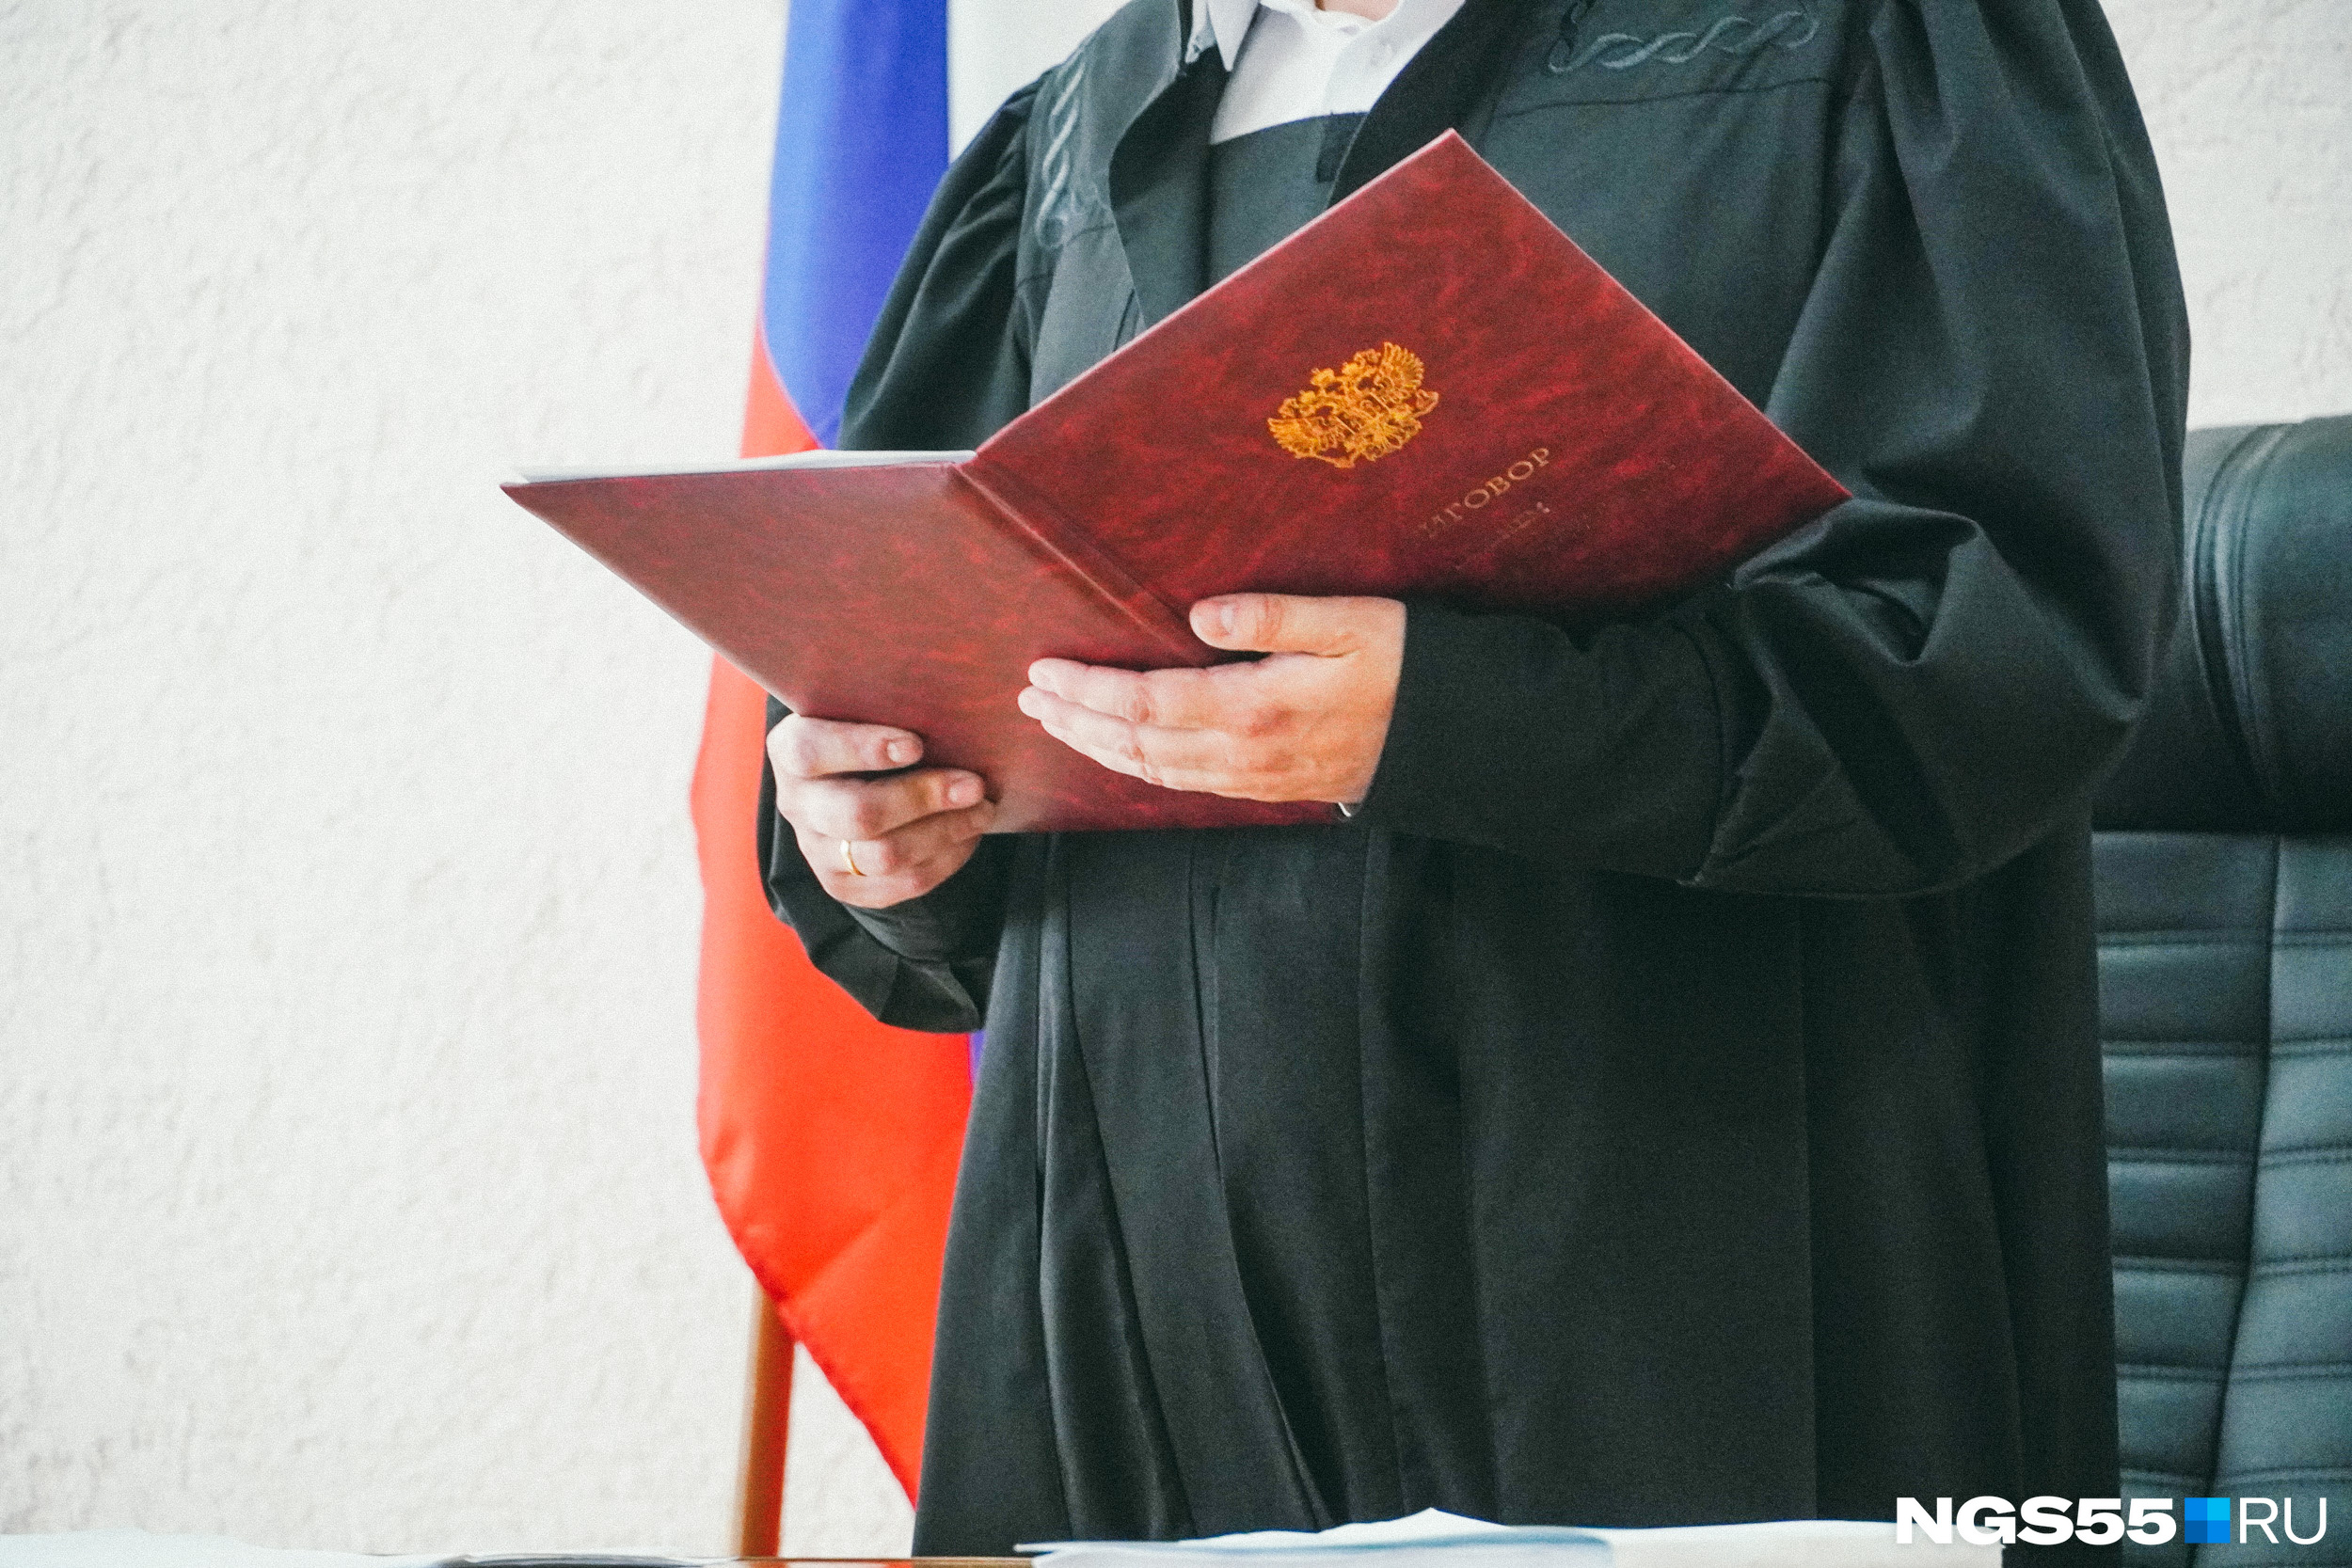 В Омске судья сбил двоих пешеходов — его сначала оправдали, а потом передумали